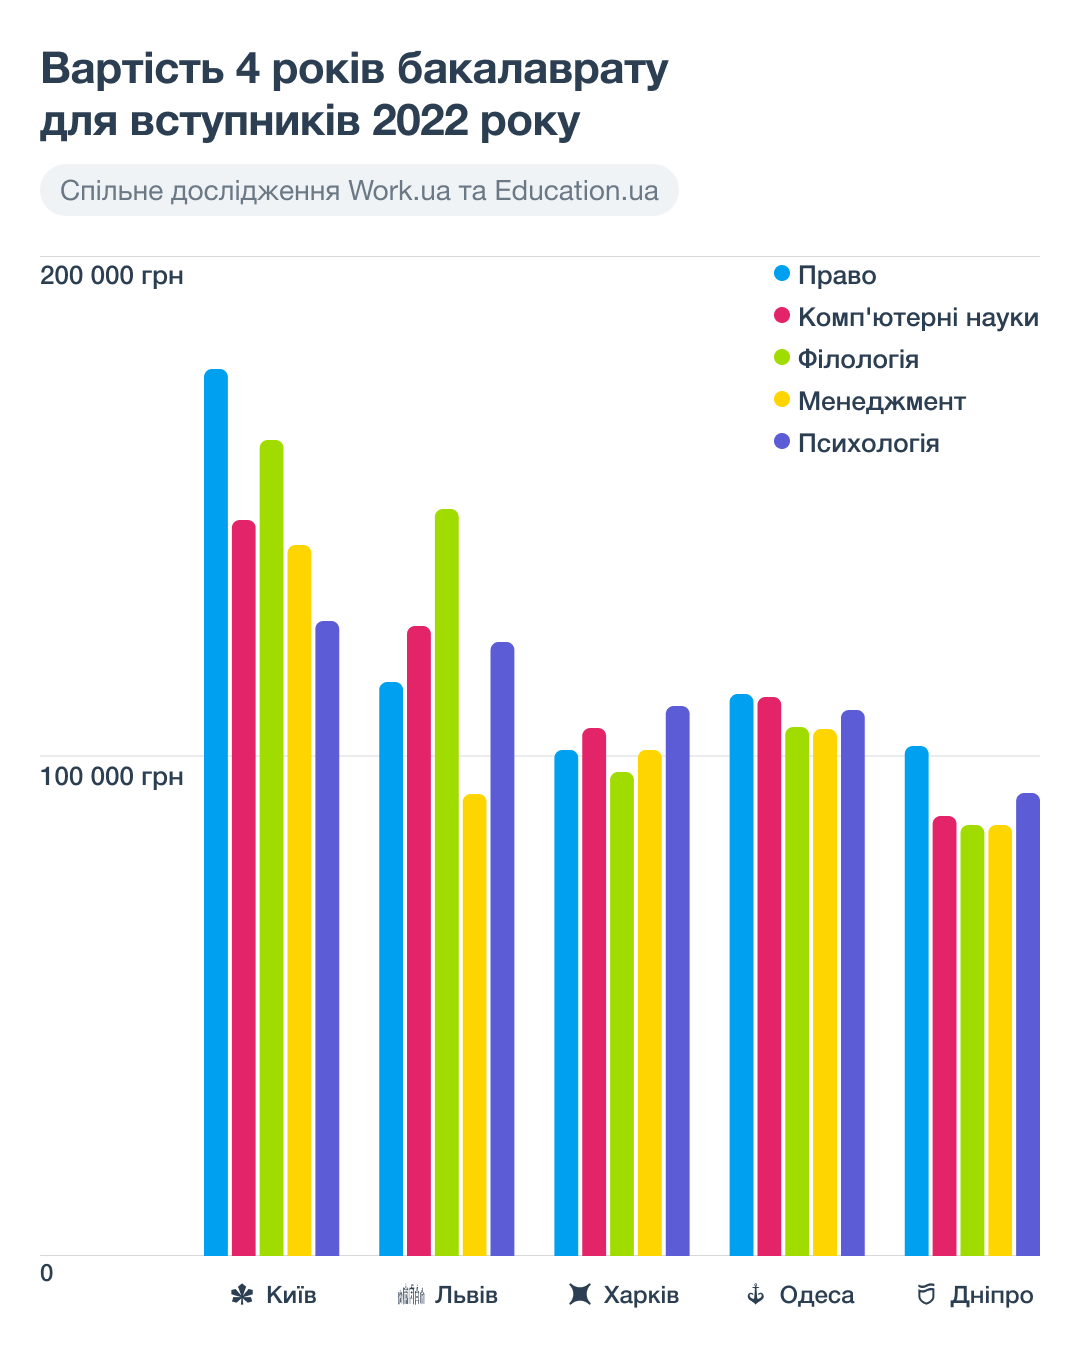 Вызов для образования. Как война изменила систему обучения в Украине